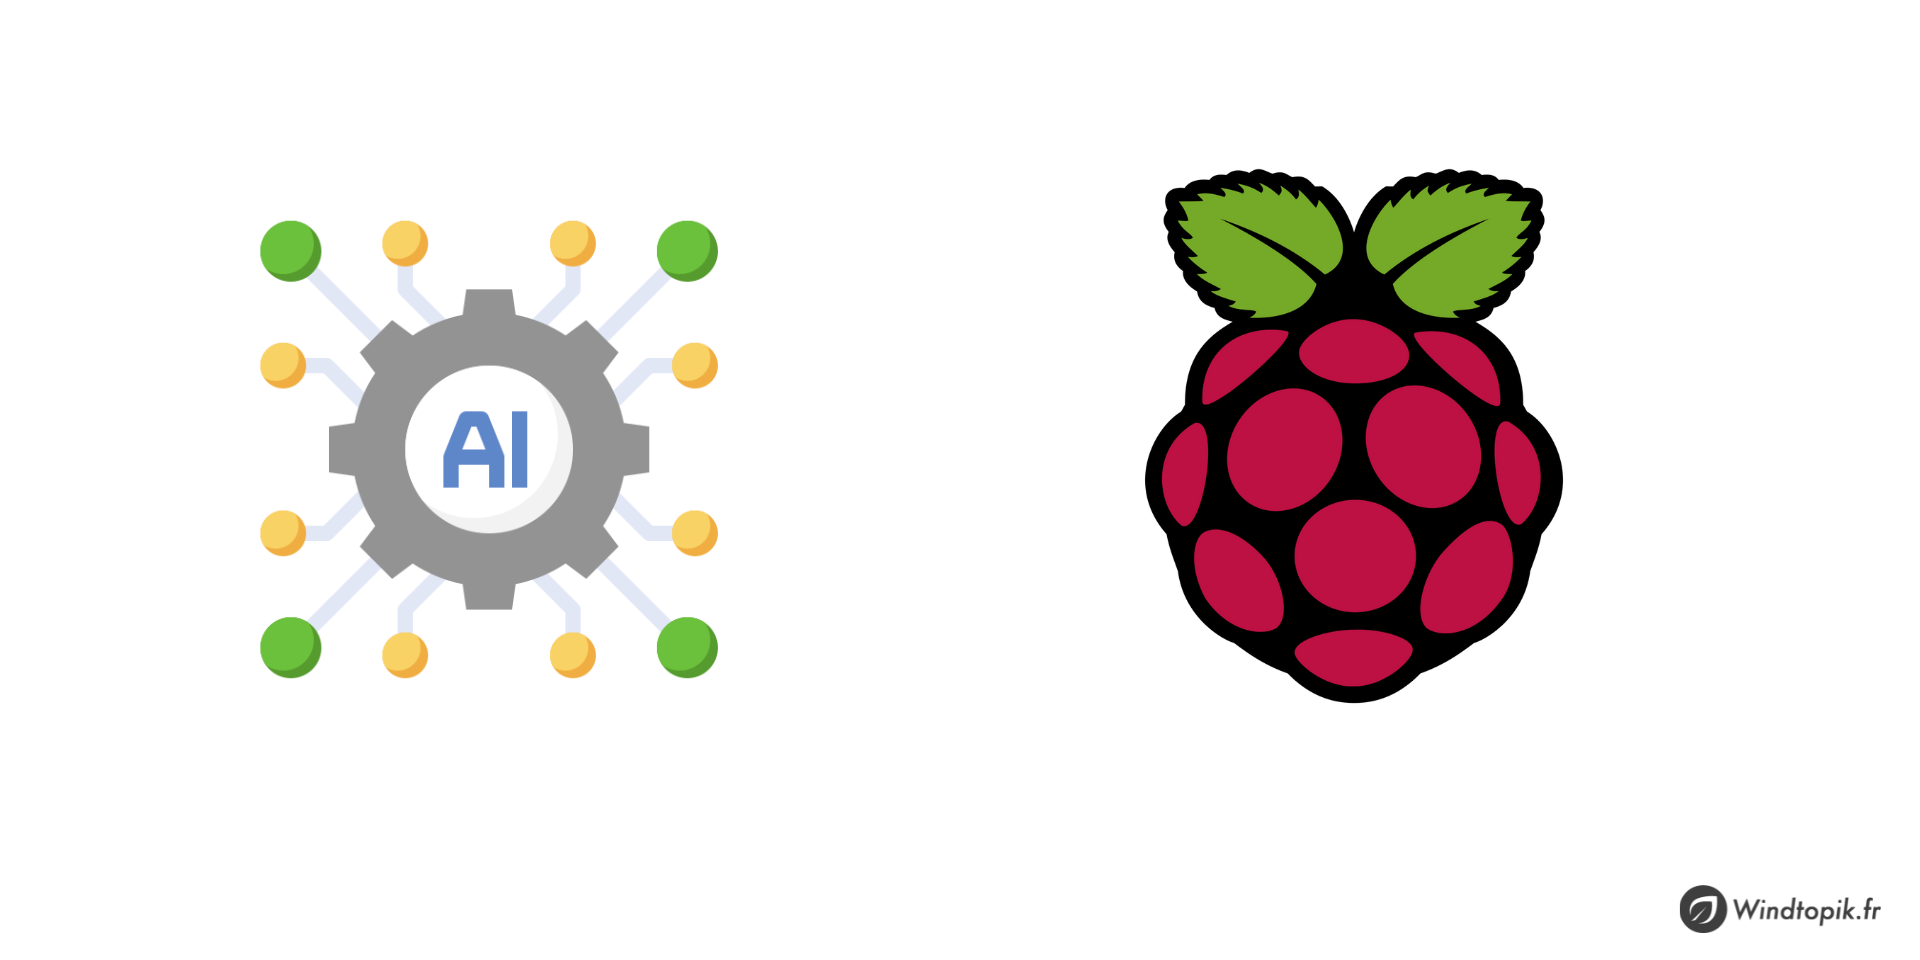 Raspberry-Pi : 5 projets d’intelligence artificielle étonnants à mettre en oeuvre